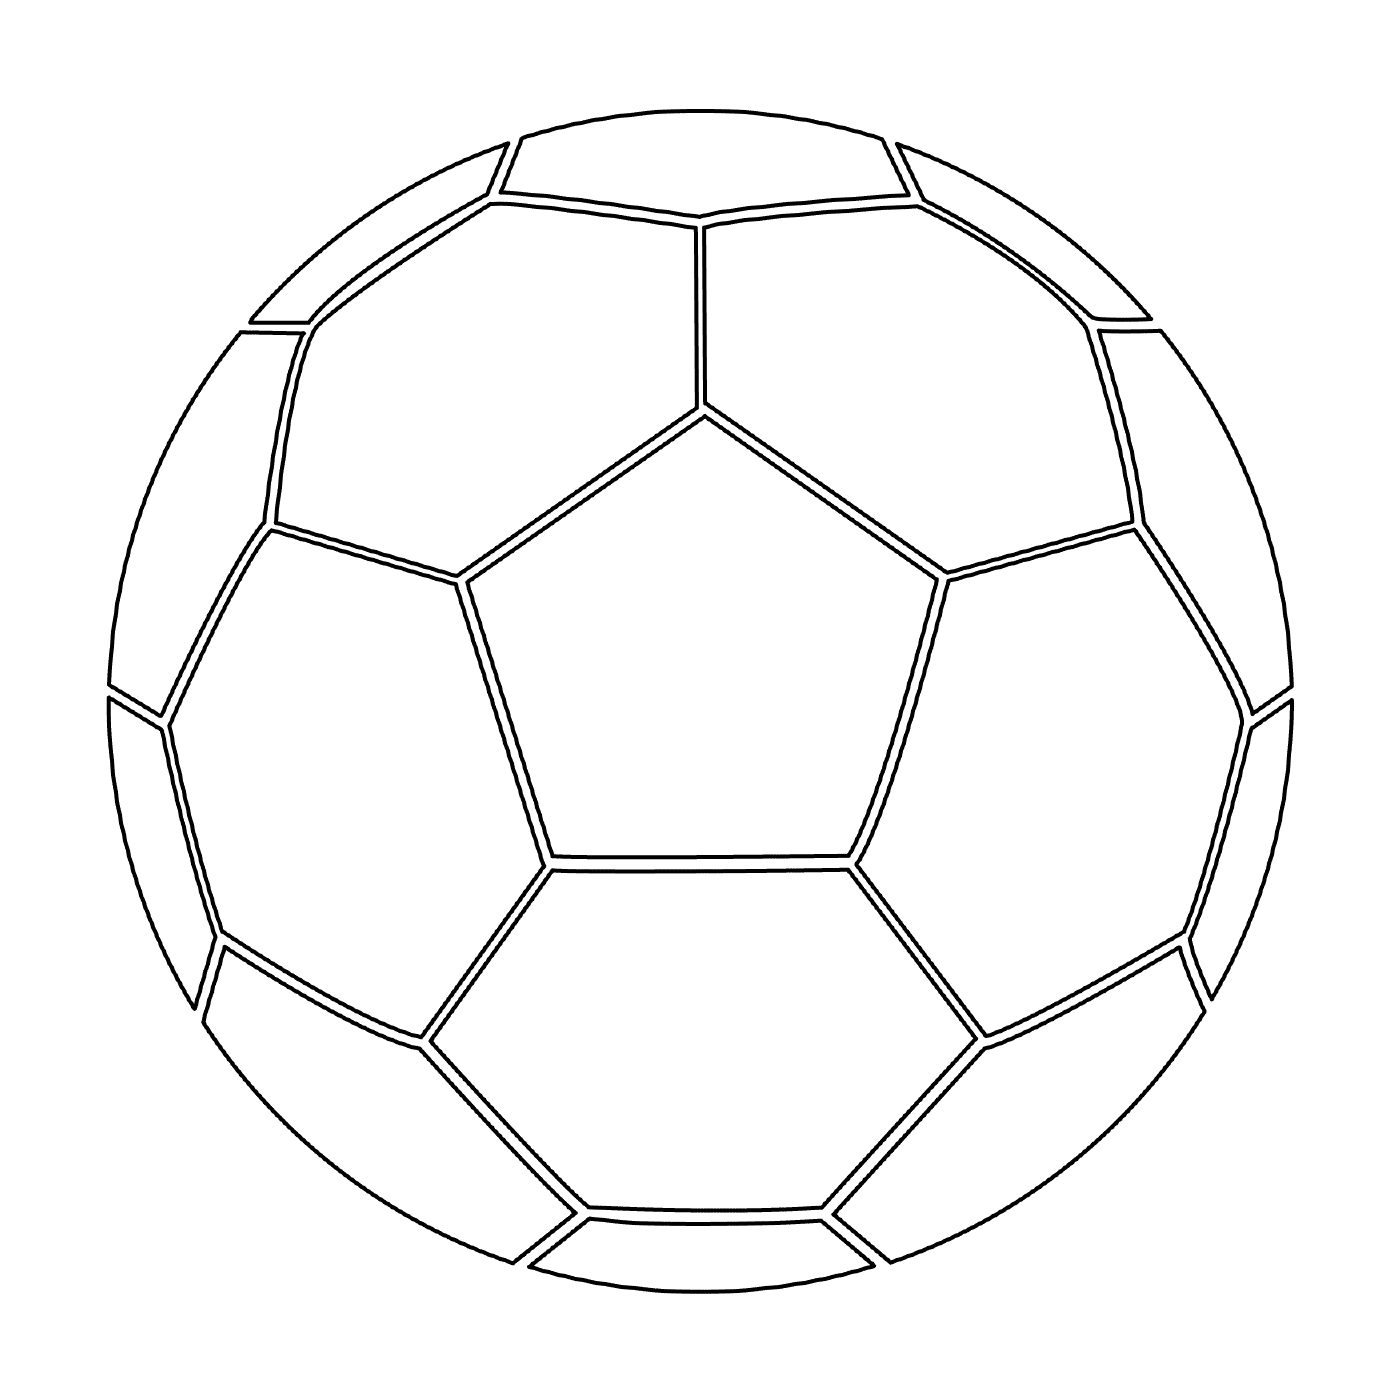  एक फुटबॉल गेंद 